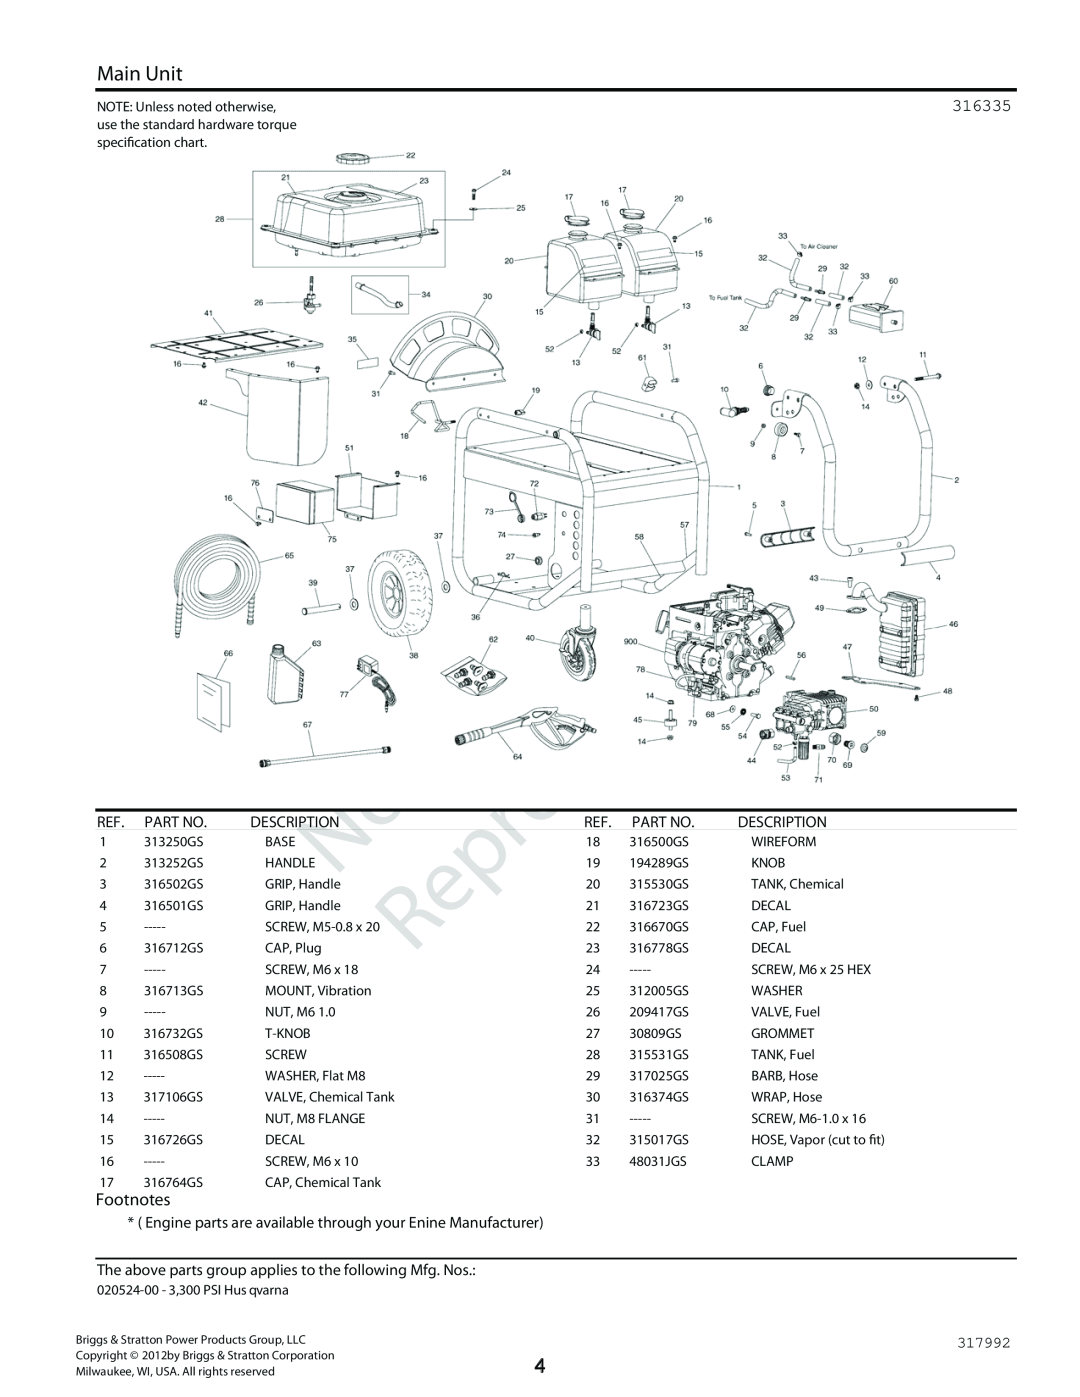 Husqvarna 020524-00 3, 300 PSI manual Reproduction, Main Unit, 316335, Footnotes, Description 